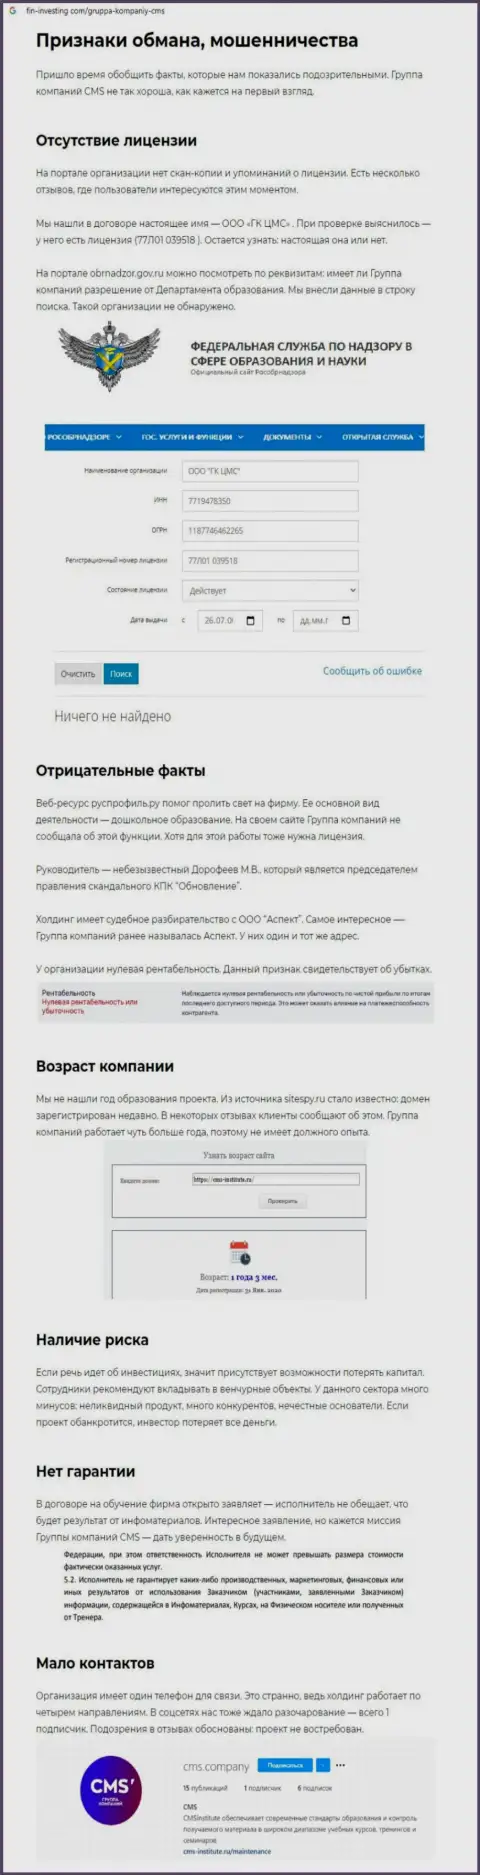 Обзорная публикация о противозаконных действиях воров CMS-Institute Ru, будьте бдительны ! КИДАЛОВО !